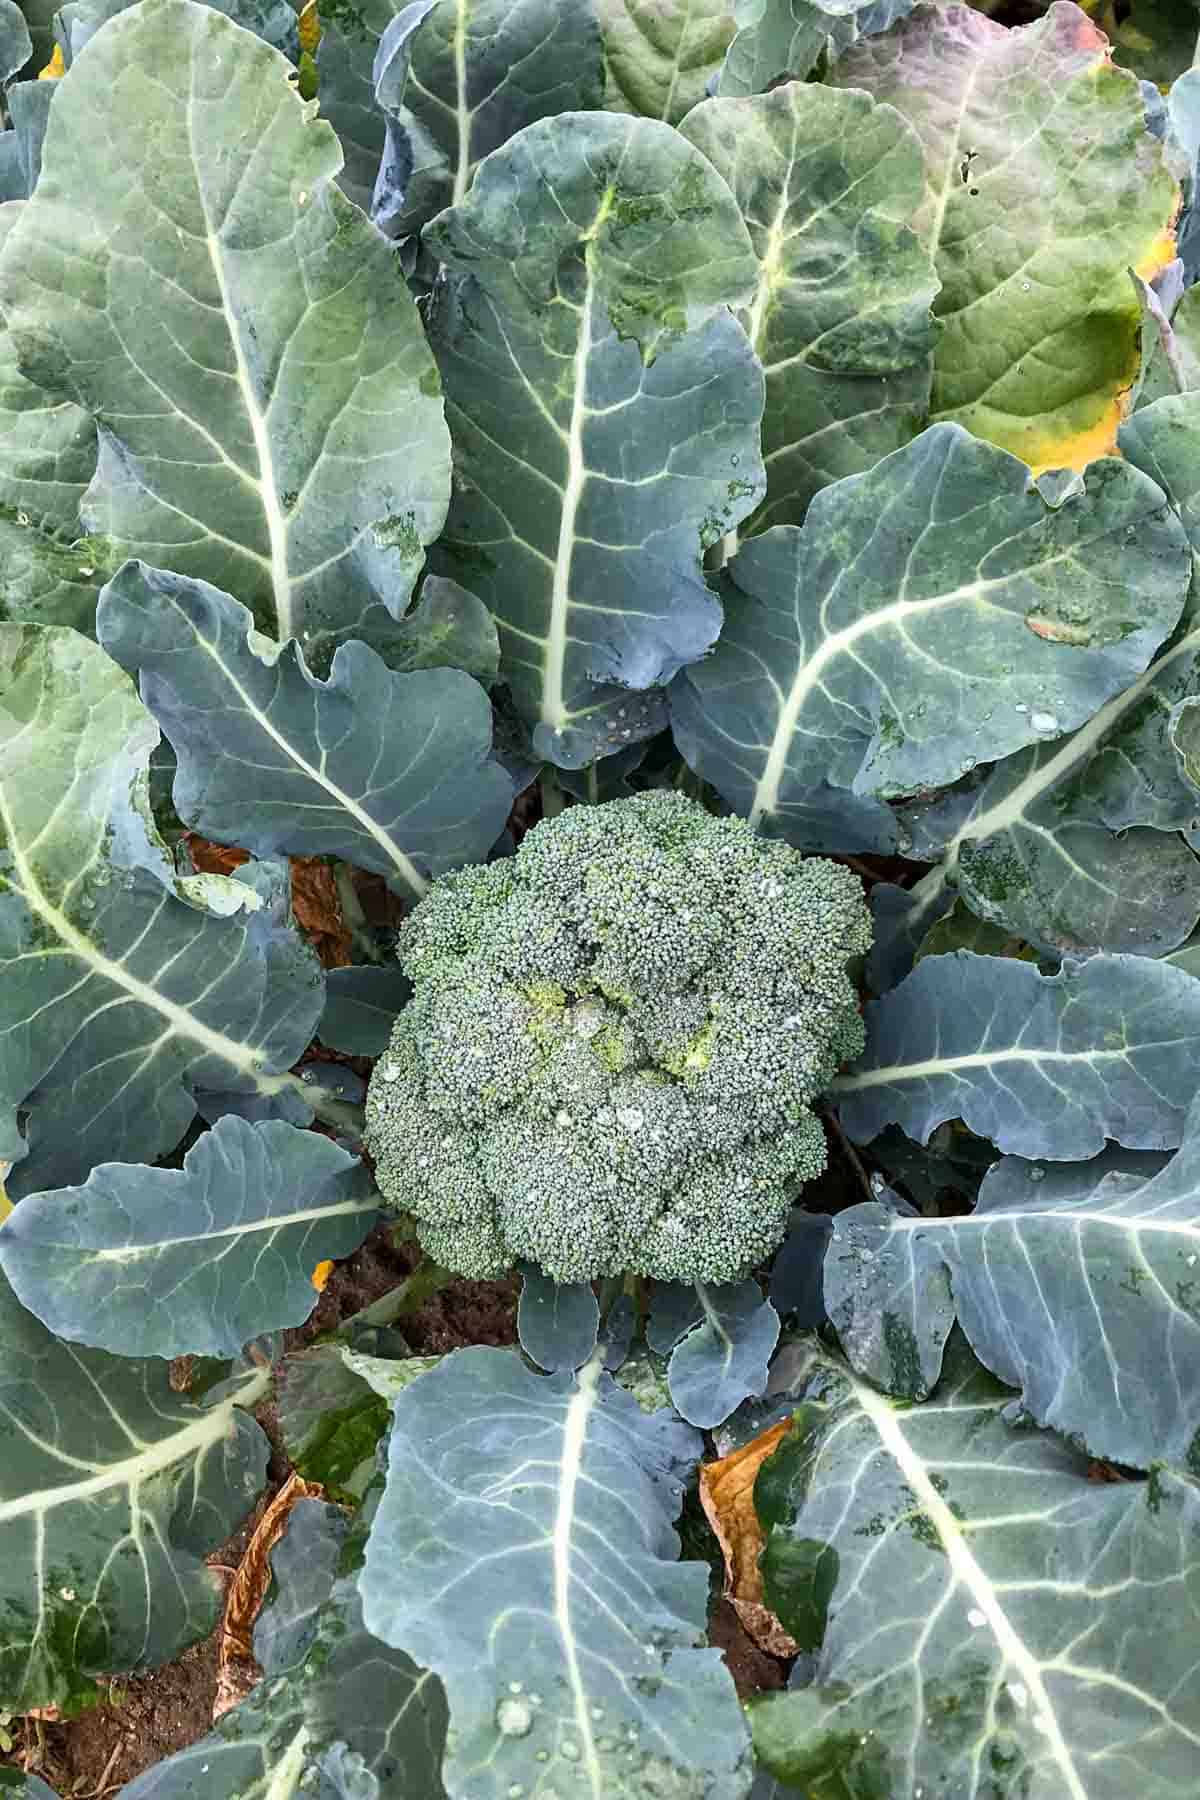 Head of broccoli growing in a field